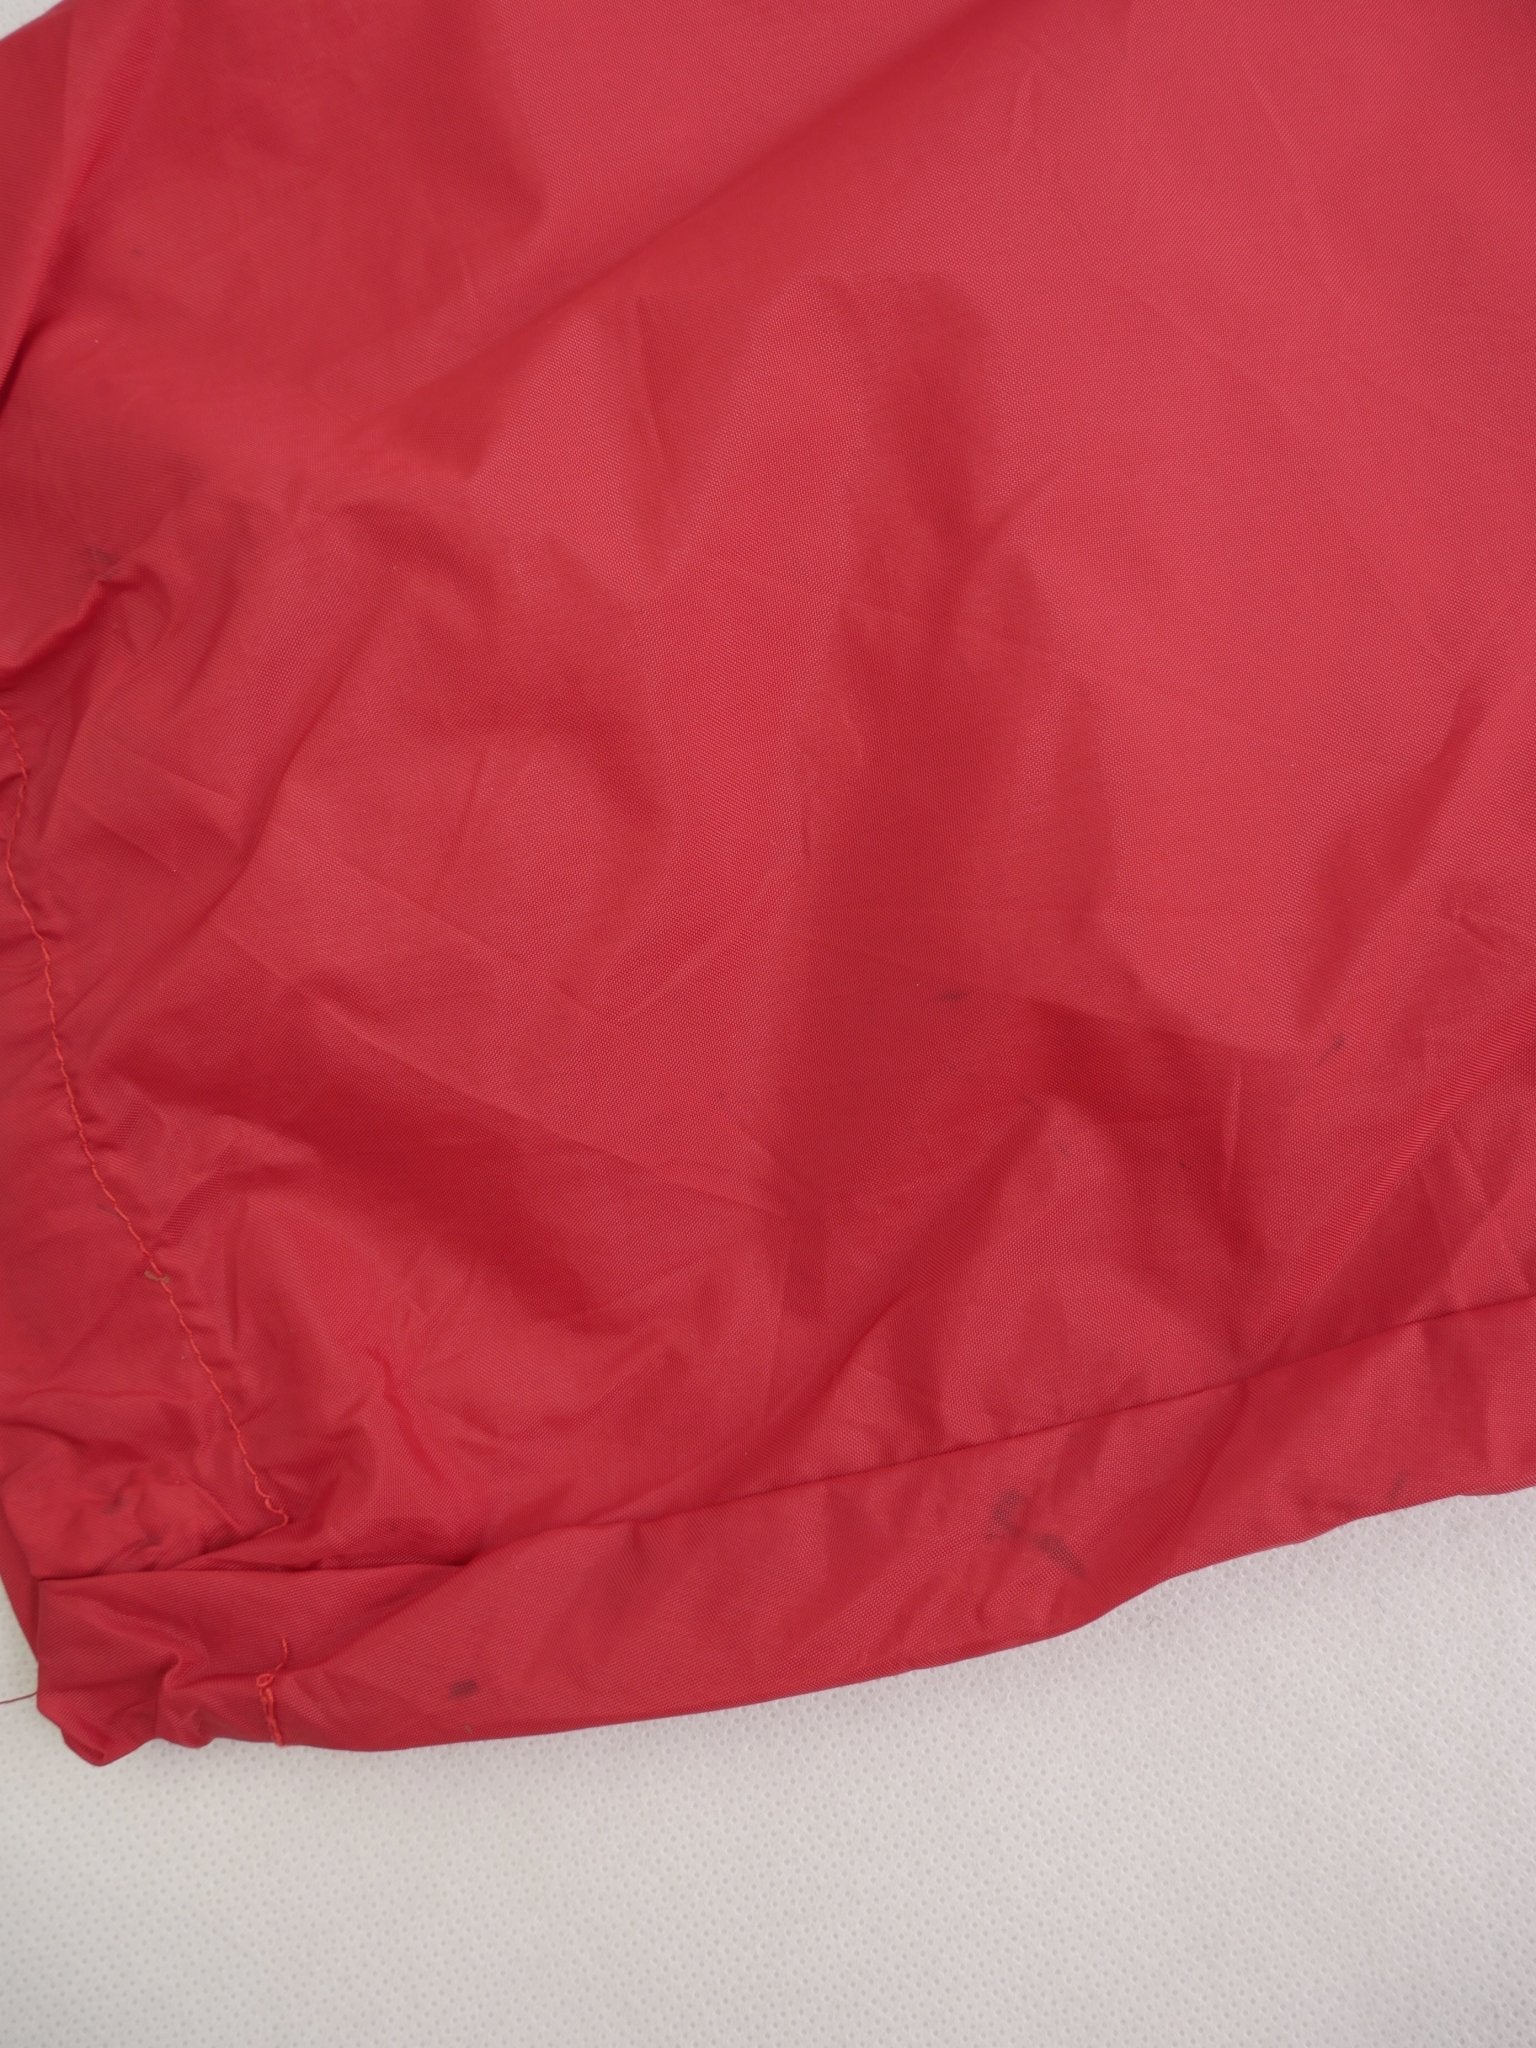 Adidas patched Logo Vintage Half Zip Track Jacke - Peeces